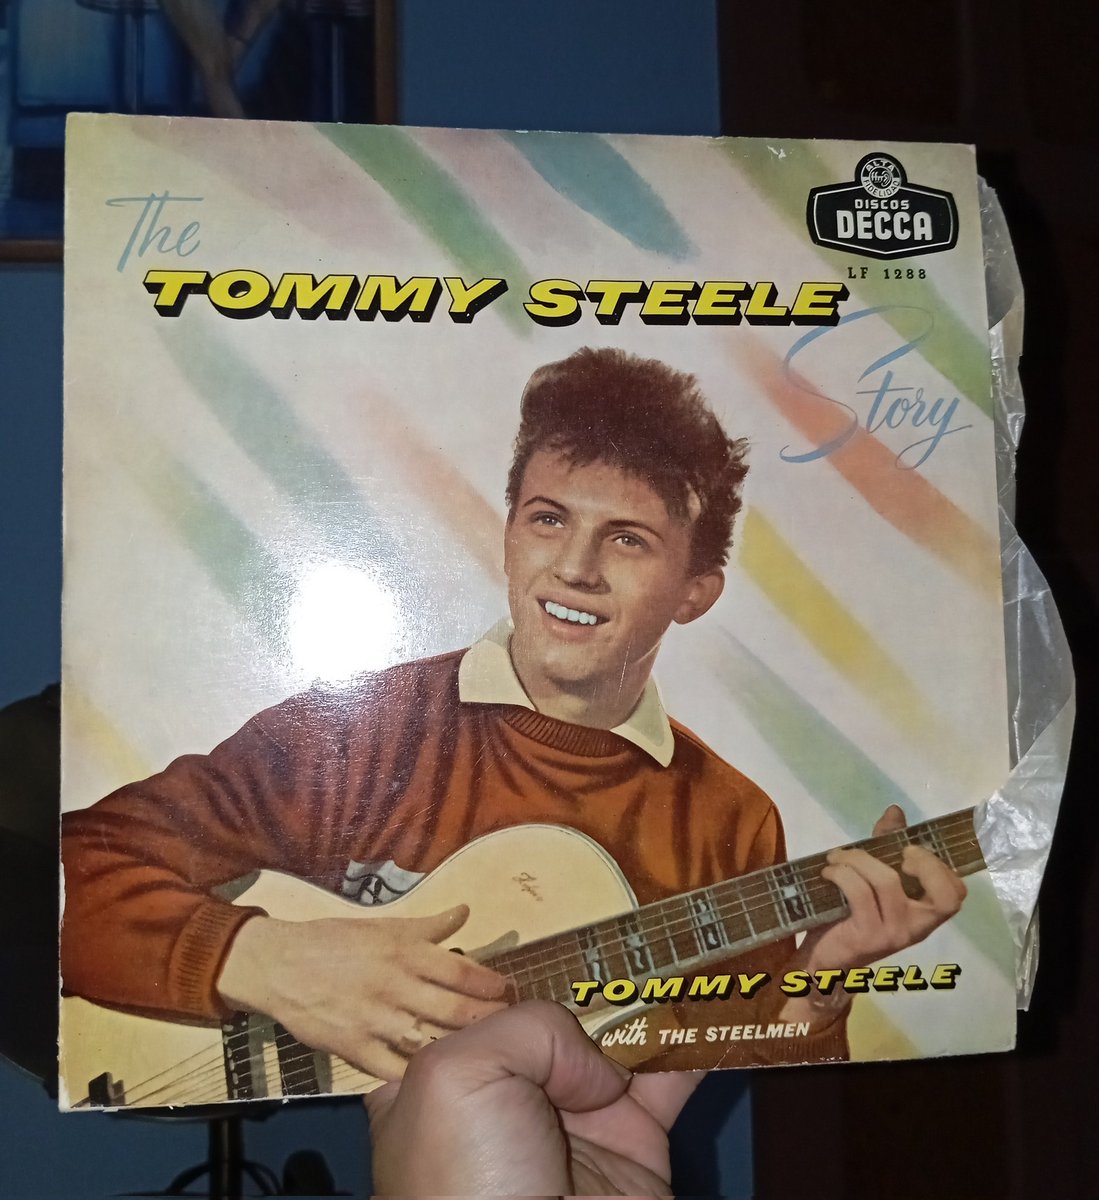 Hoy me llegó este Lp de 10 pulgadas edición española de Tommy Steele, y aunque me viene sin fecha, no sería de extrañar que haya sido el primer disco de rock and roll de larga duración editado en nuestro país.#rock #tommysteele #historiadelrock #Musica #oldies #inolvidables